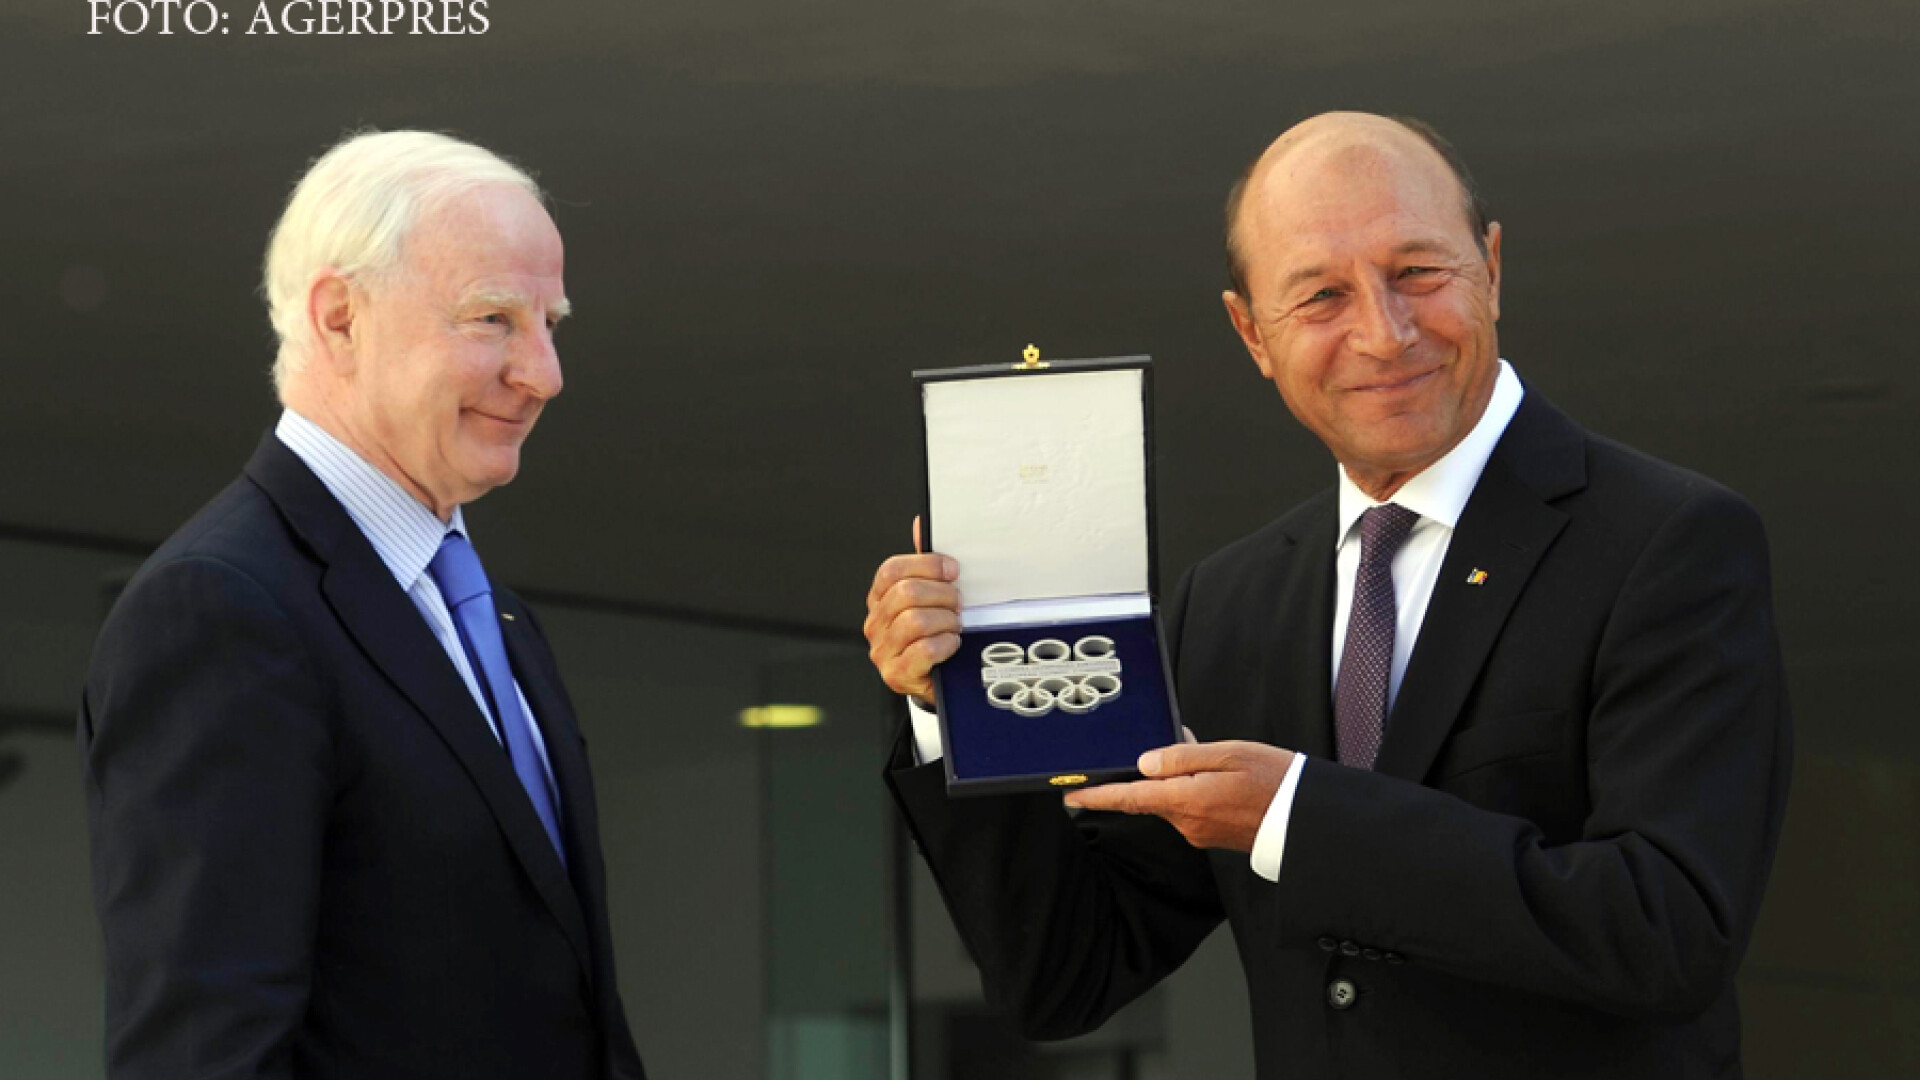 Presedintele Traian Basescu (dr.) primeste distinctia cu numele si efigia Comitetului Olimpic European, din partea presedintelui Asociatiei Comitetelor Olimpice Europene, Patrick Hickey